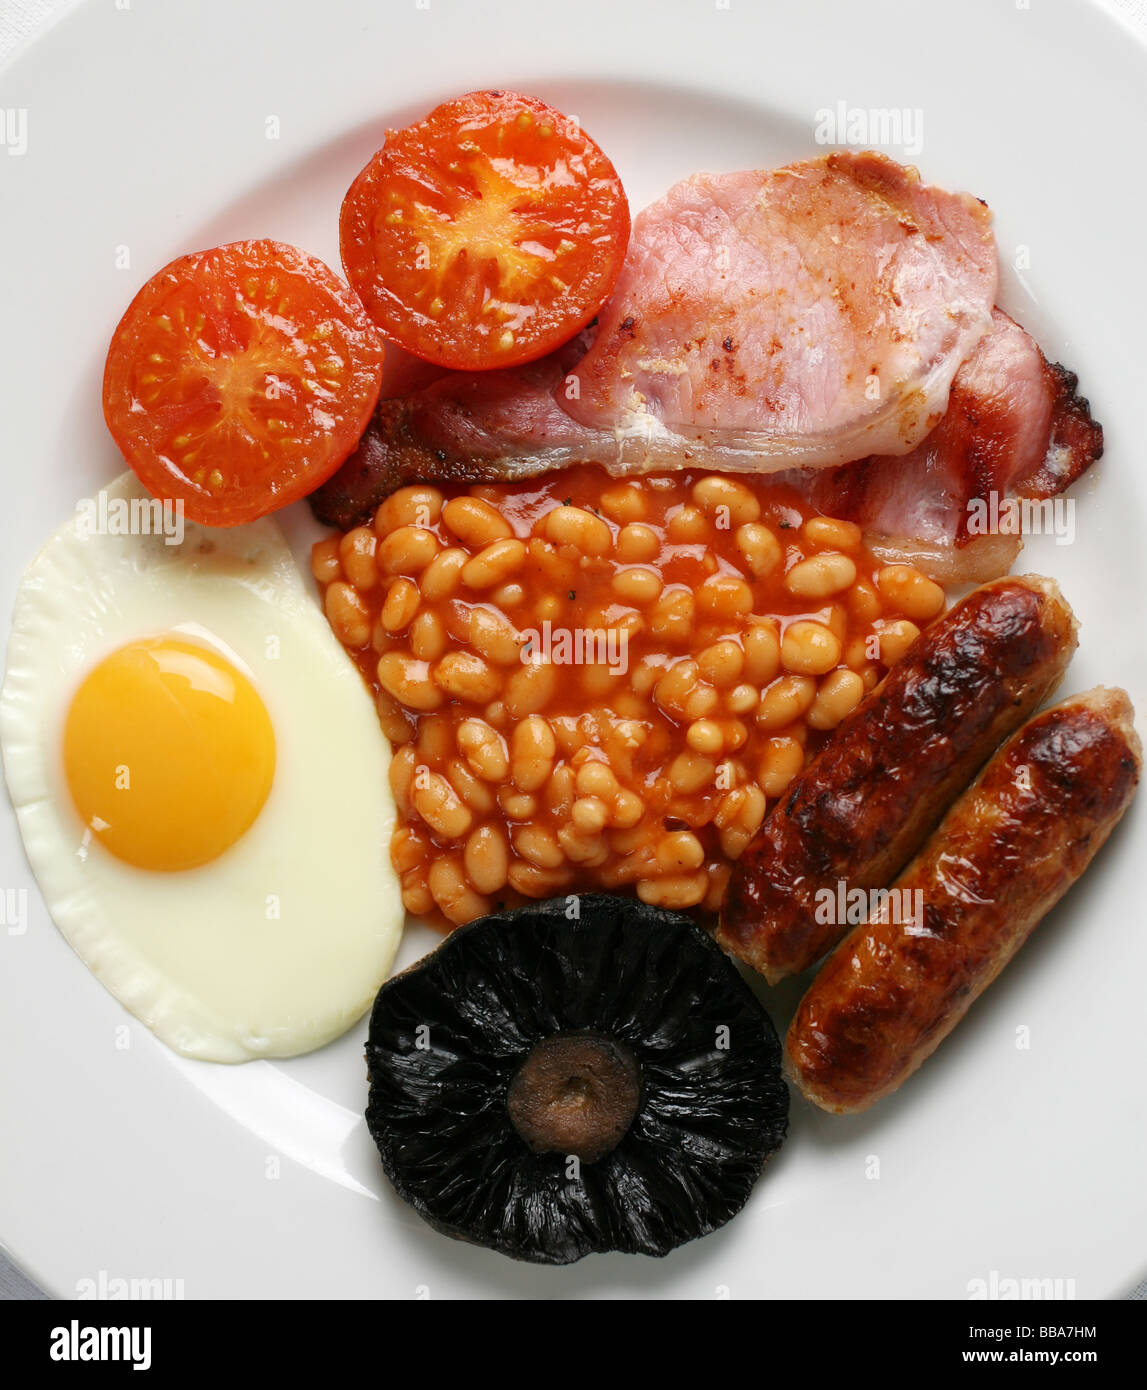 Ein komplettes englisches Frühstück Stockfoto